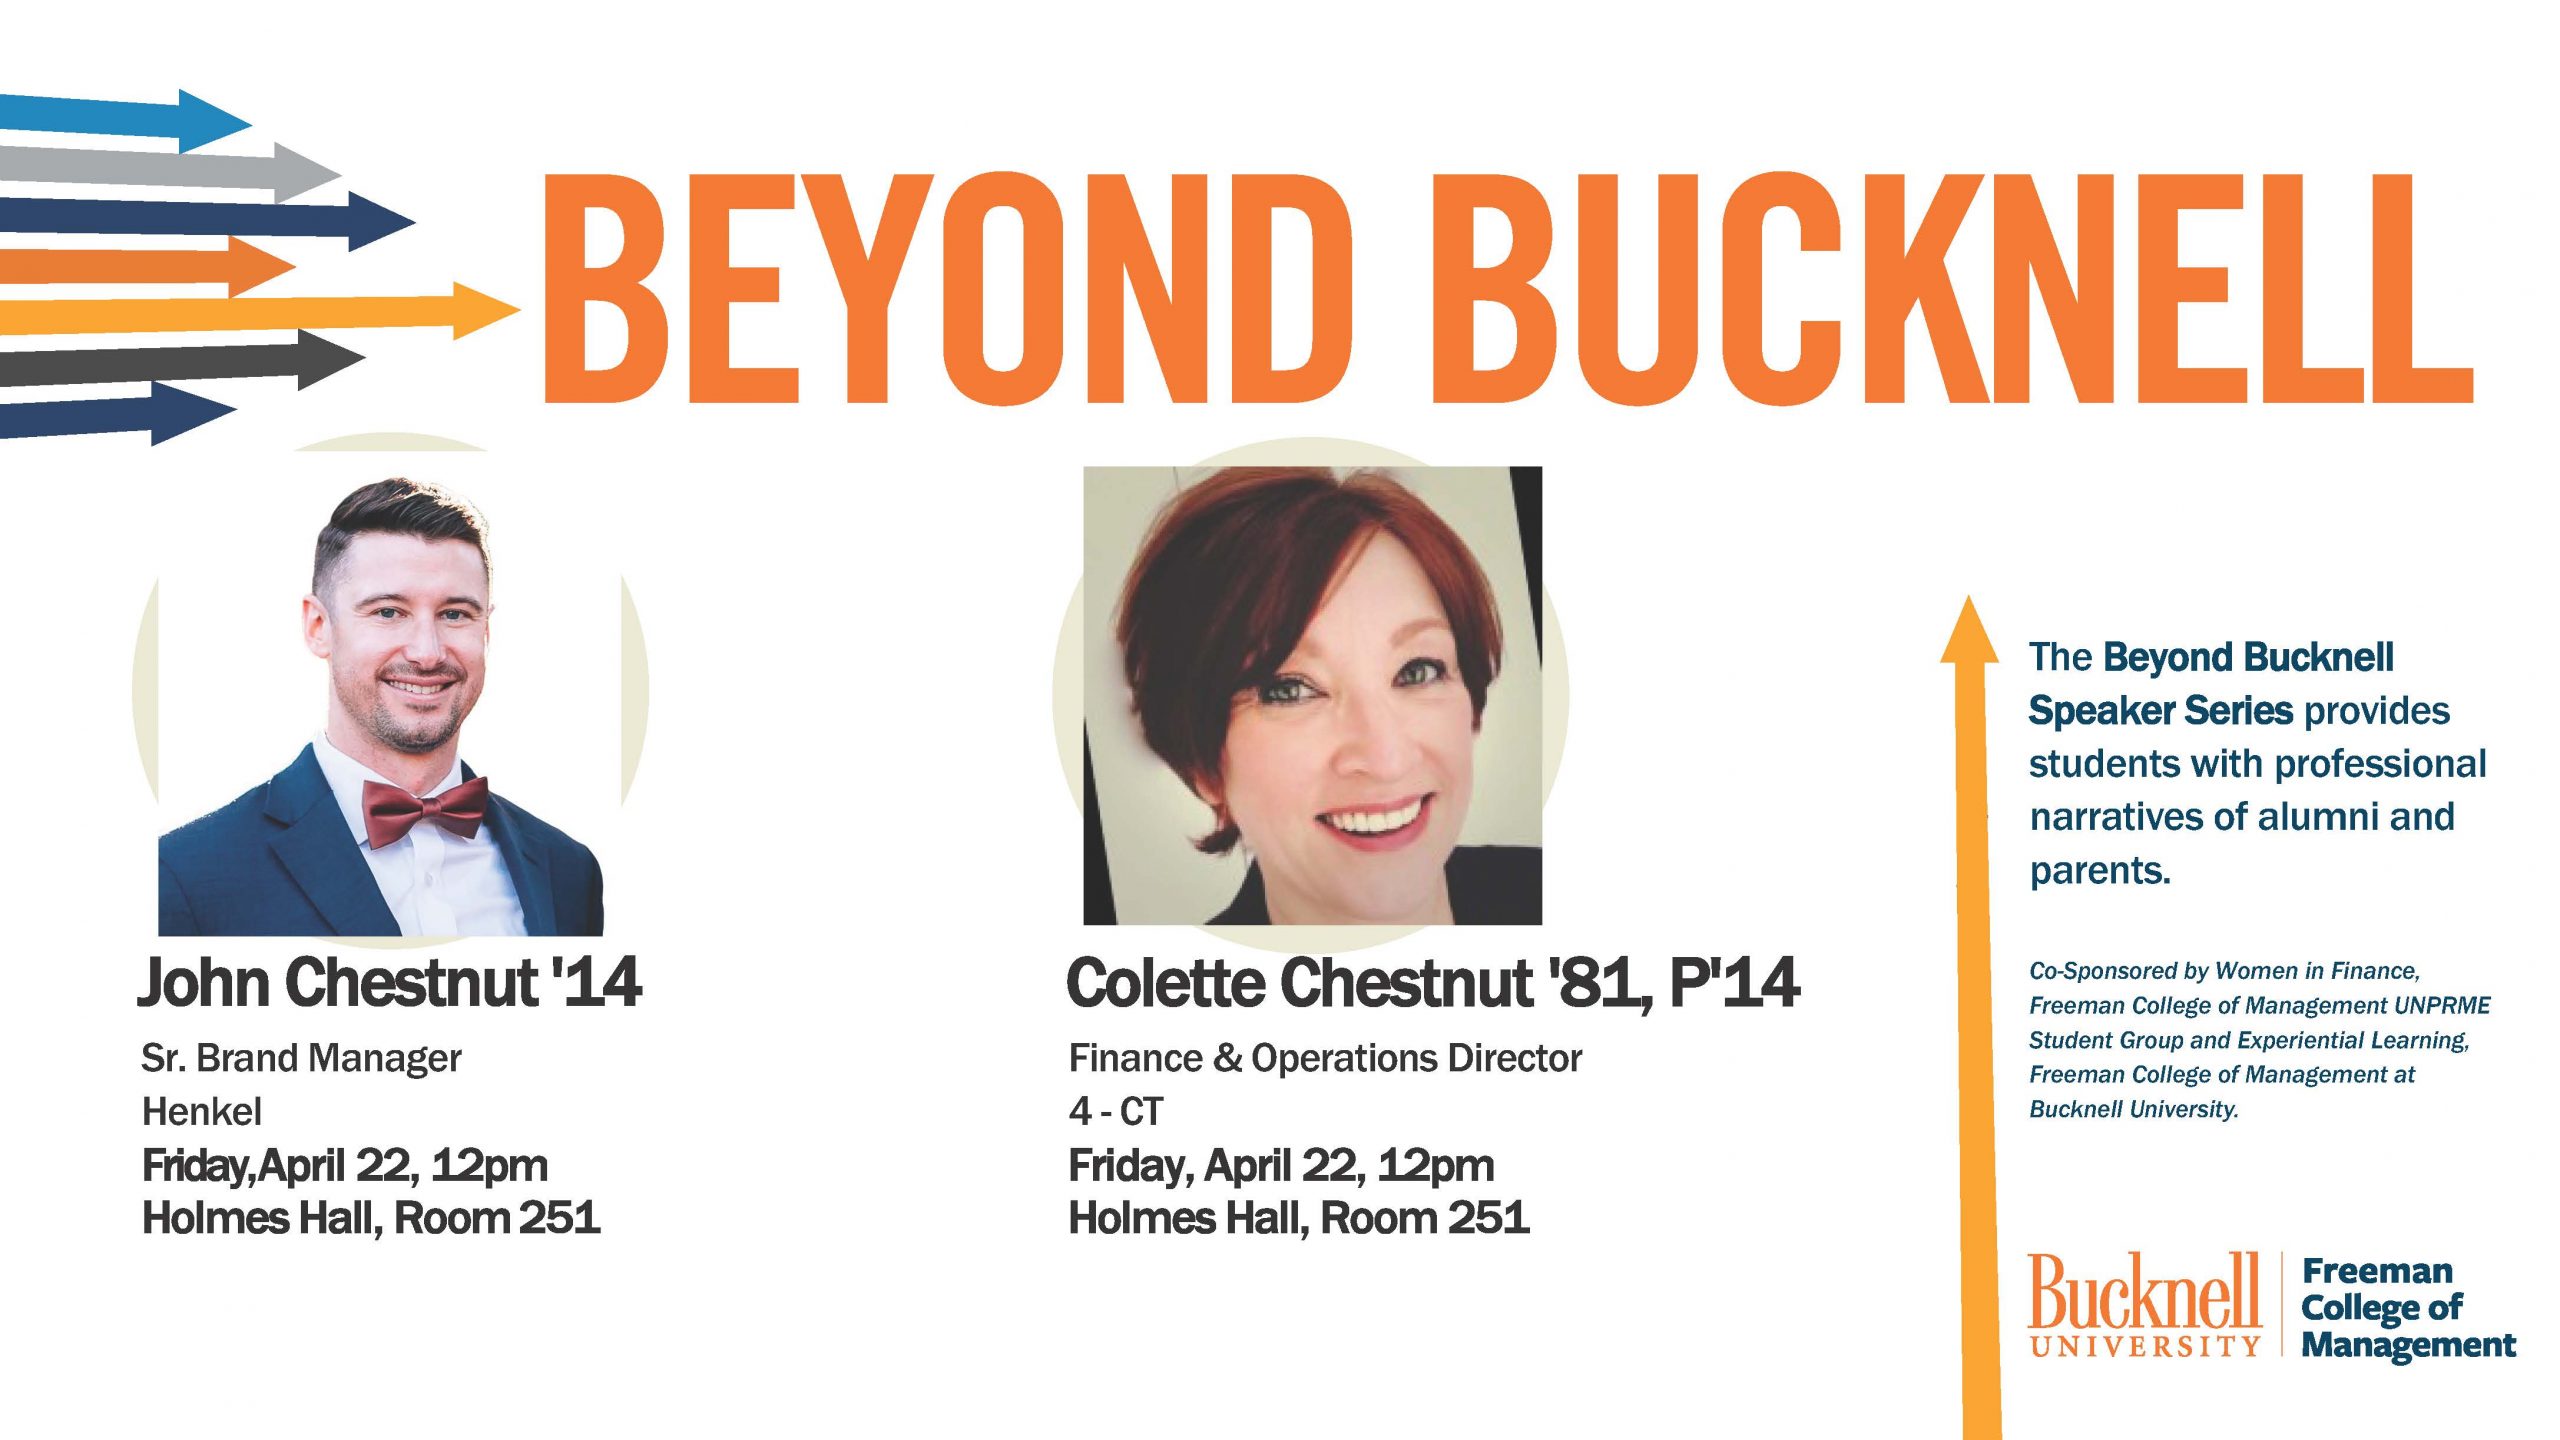 Beyond Bucknell Speaker Series presents Colette Chestnut & John Chestnut